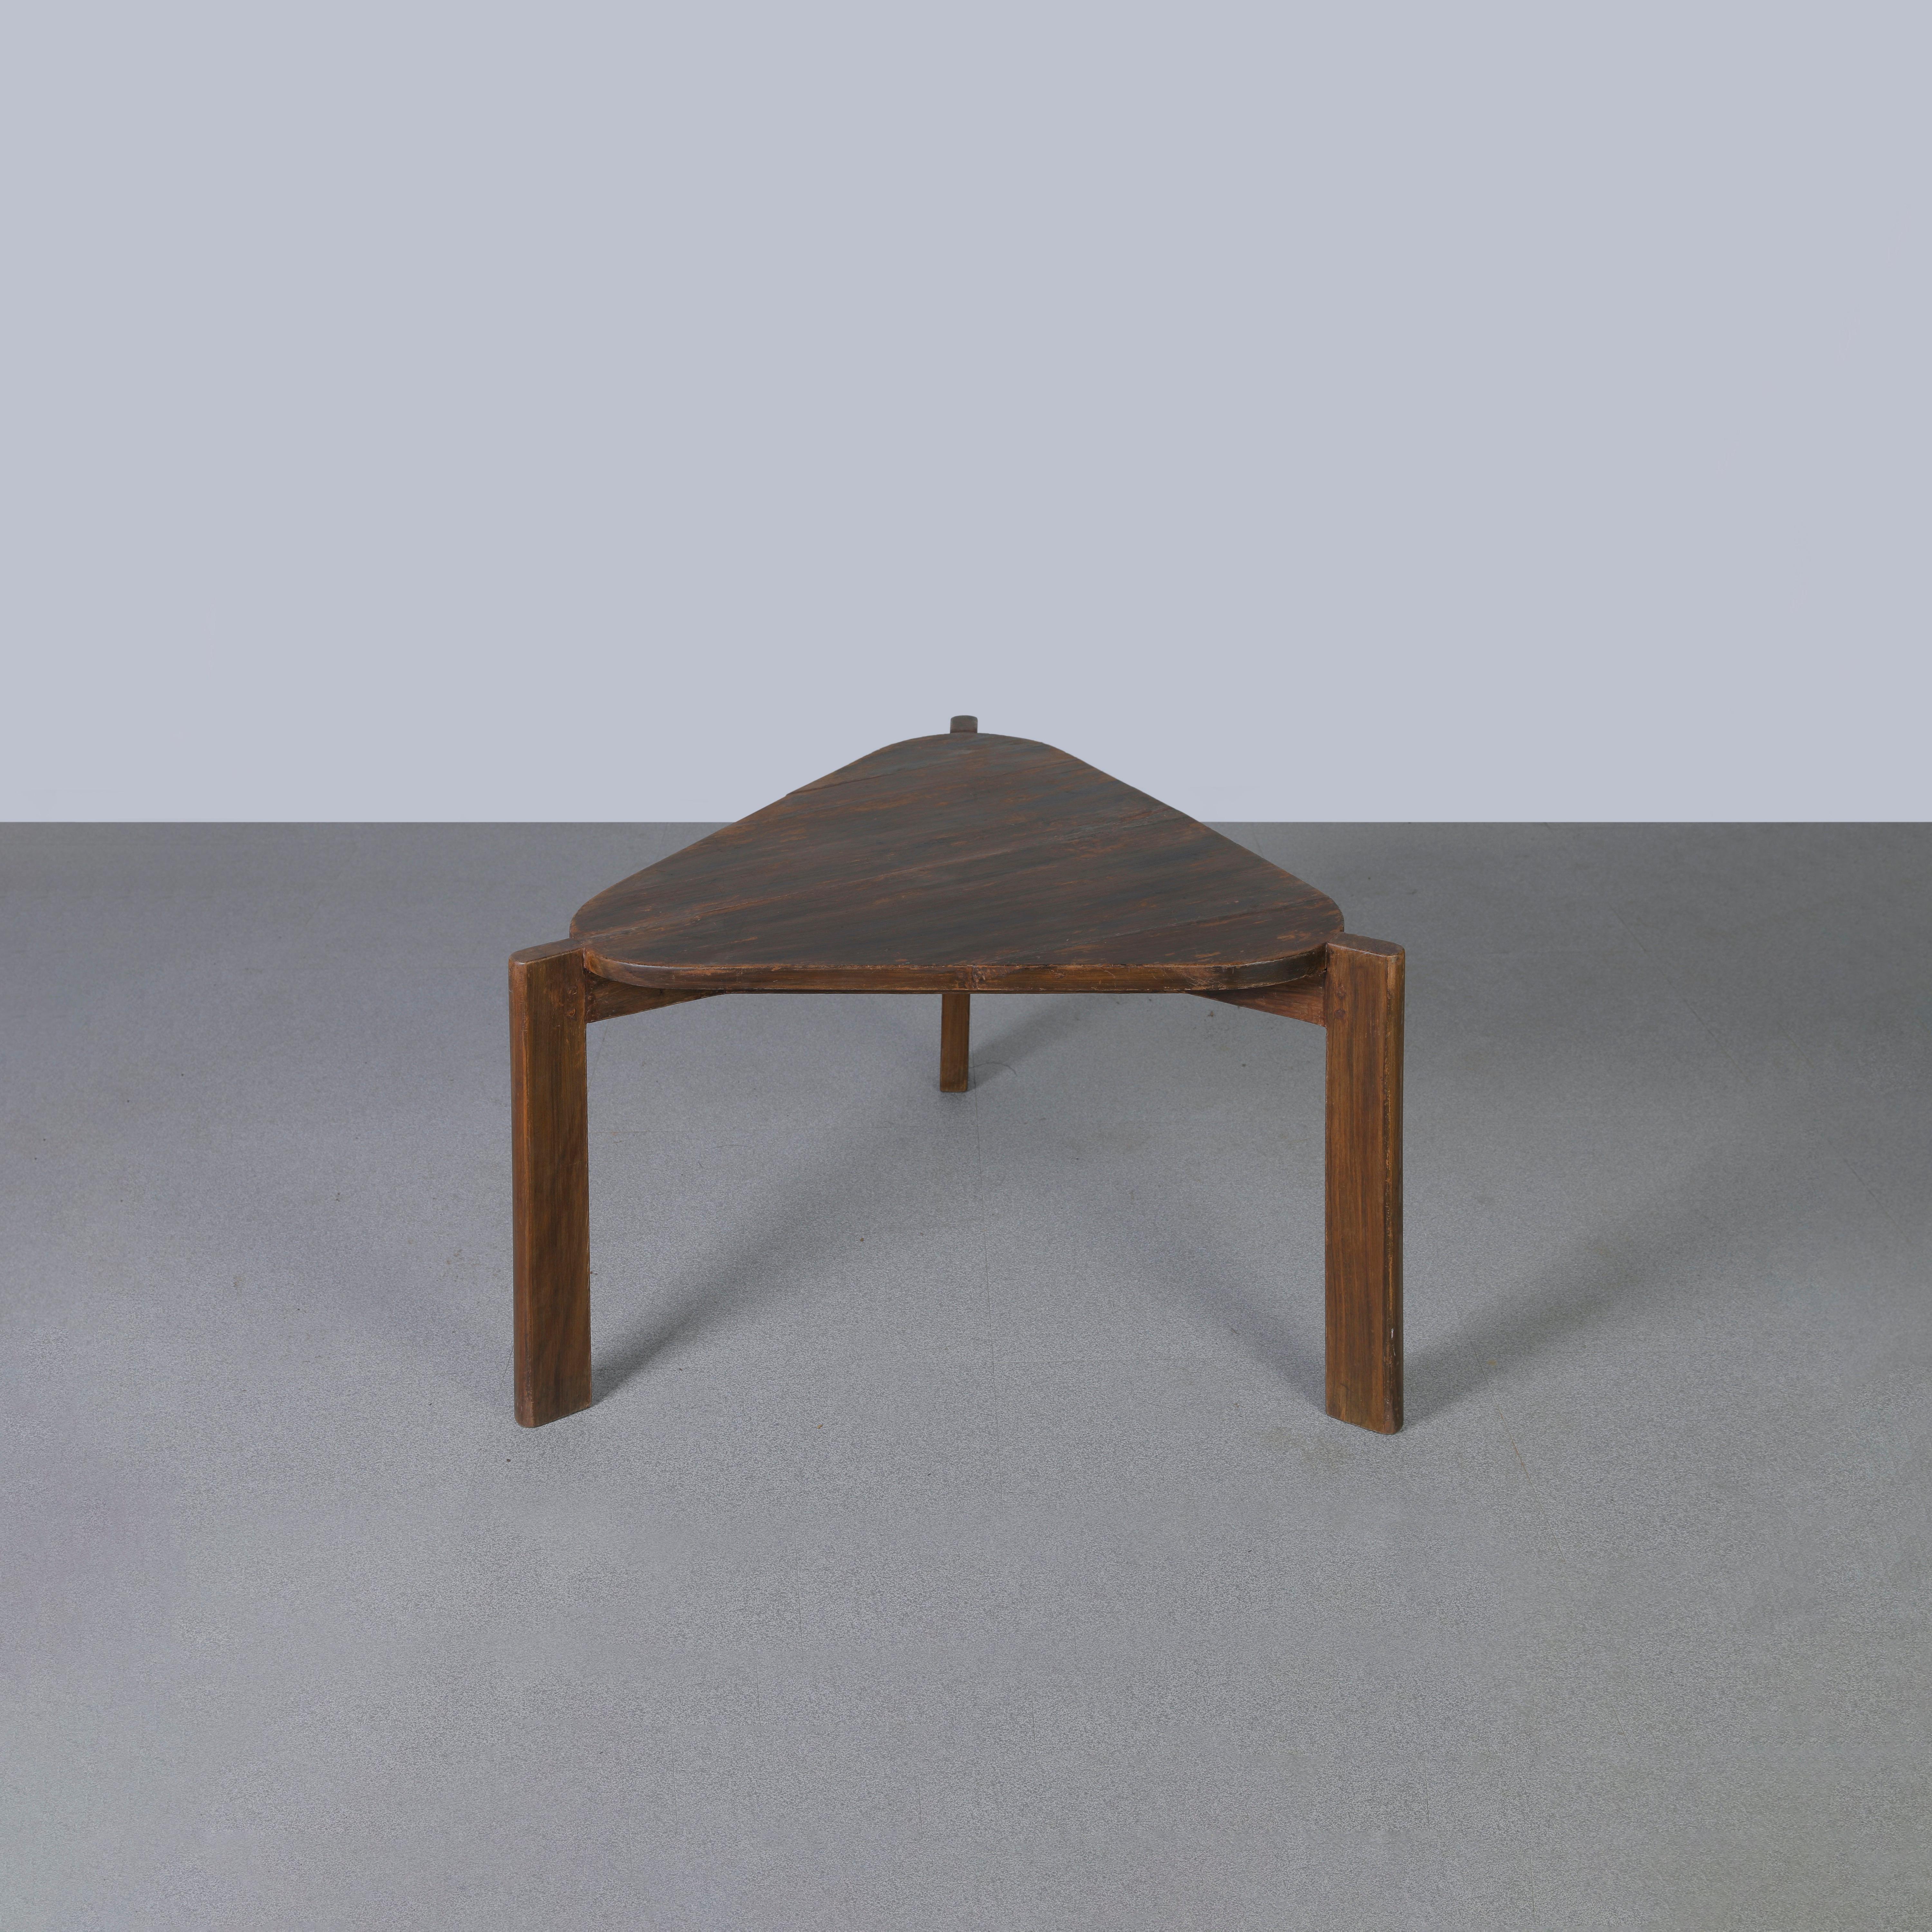 Dieser Tisch ist ein ikonisches Designobjekt. Es ist roh in seiner Einfachheit zeigt es ein leicht patiniertes Material. Seine Form ist schön zerbrechlich und hat eine wunderbare Farbe. Wir restaurieren sie nicht allzu sehr. So bewahren wir so viel